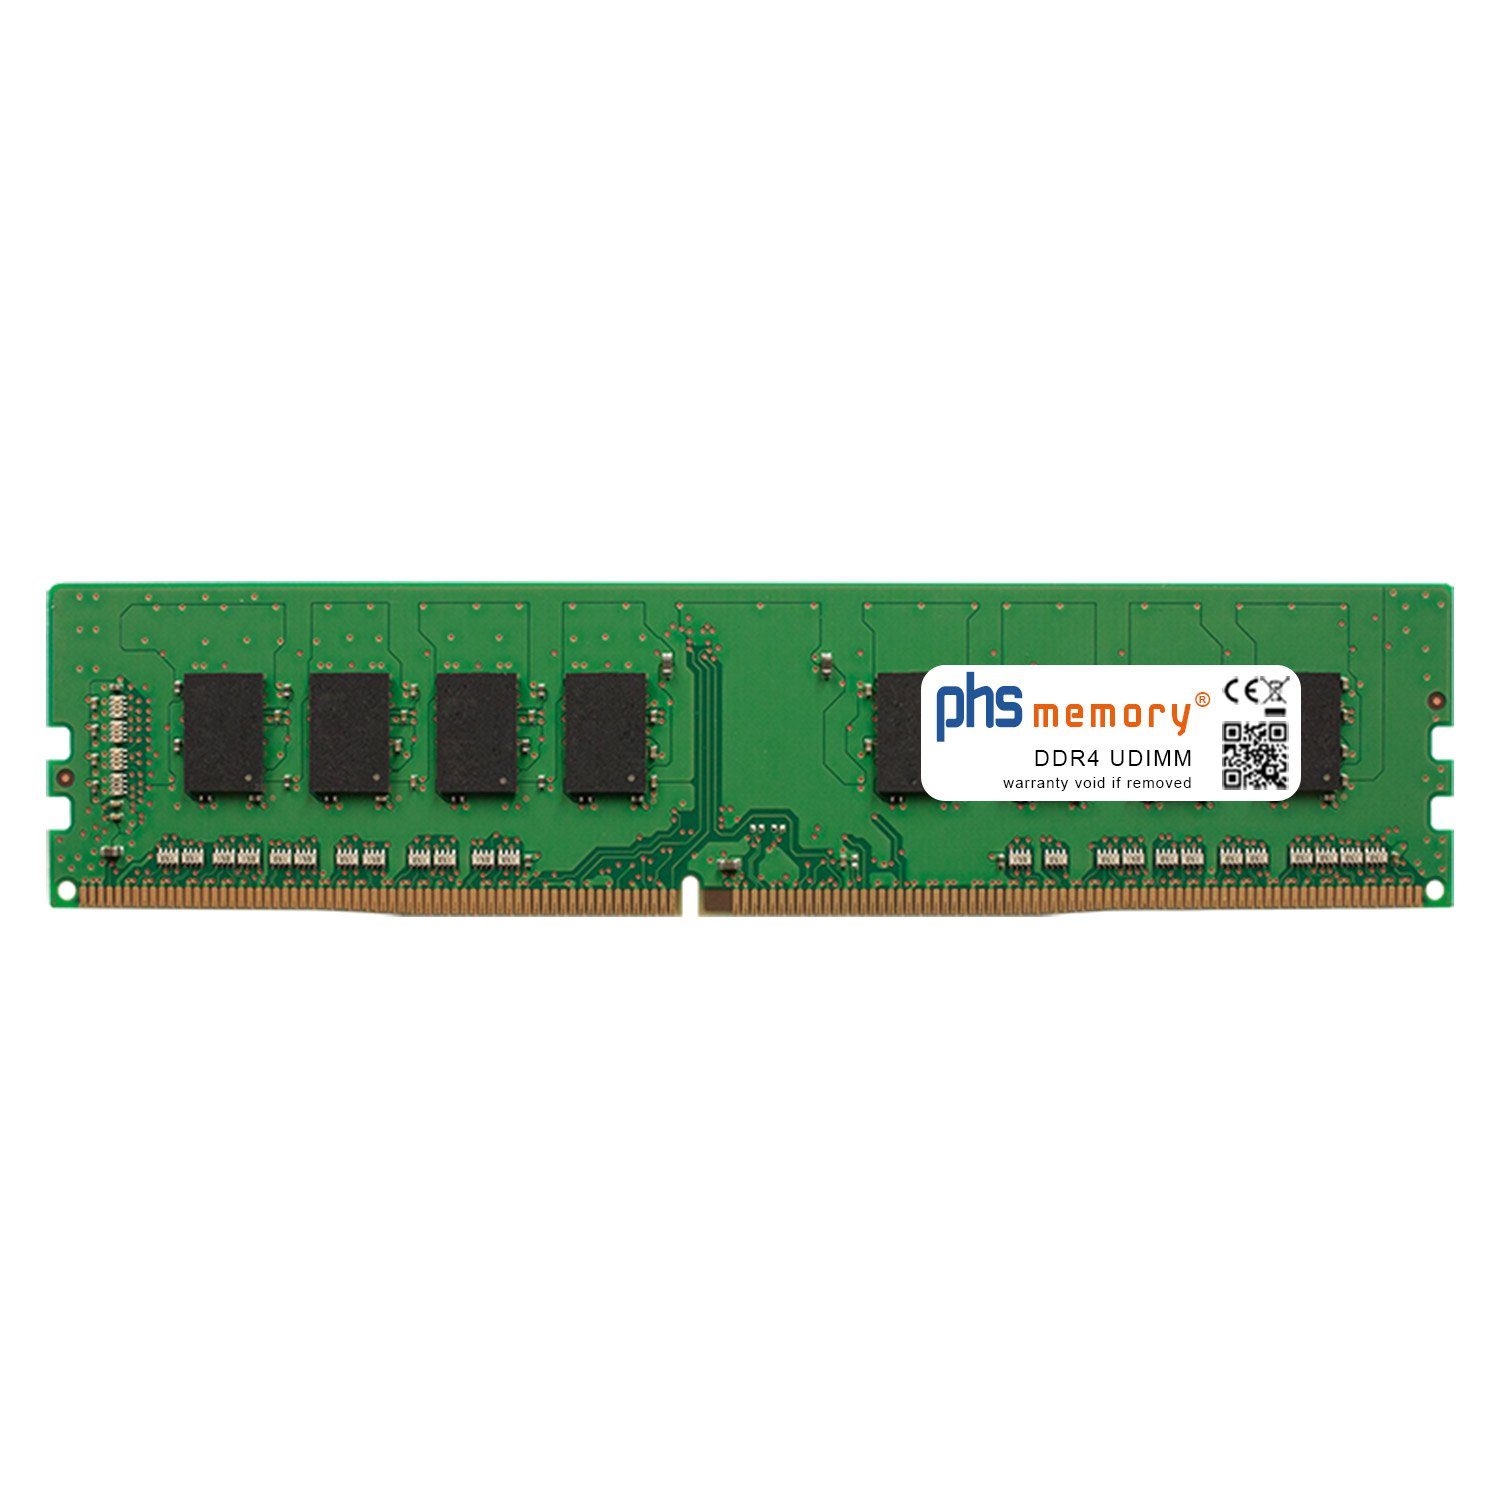 PHS-memory RAM für Captiva Power Starter I67-213 TFT Bundle Arbeitsspeicher